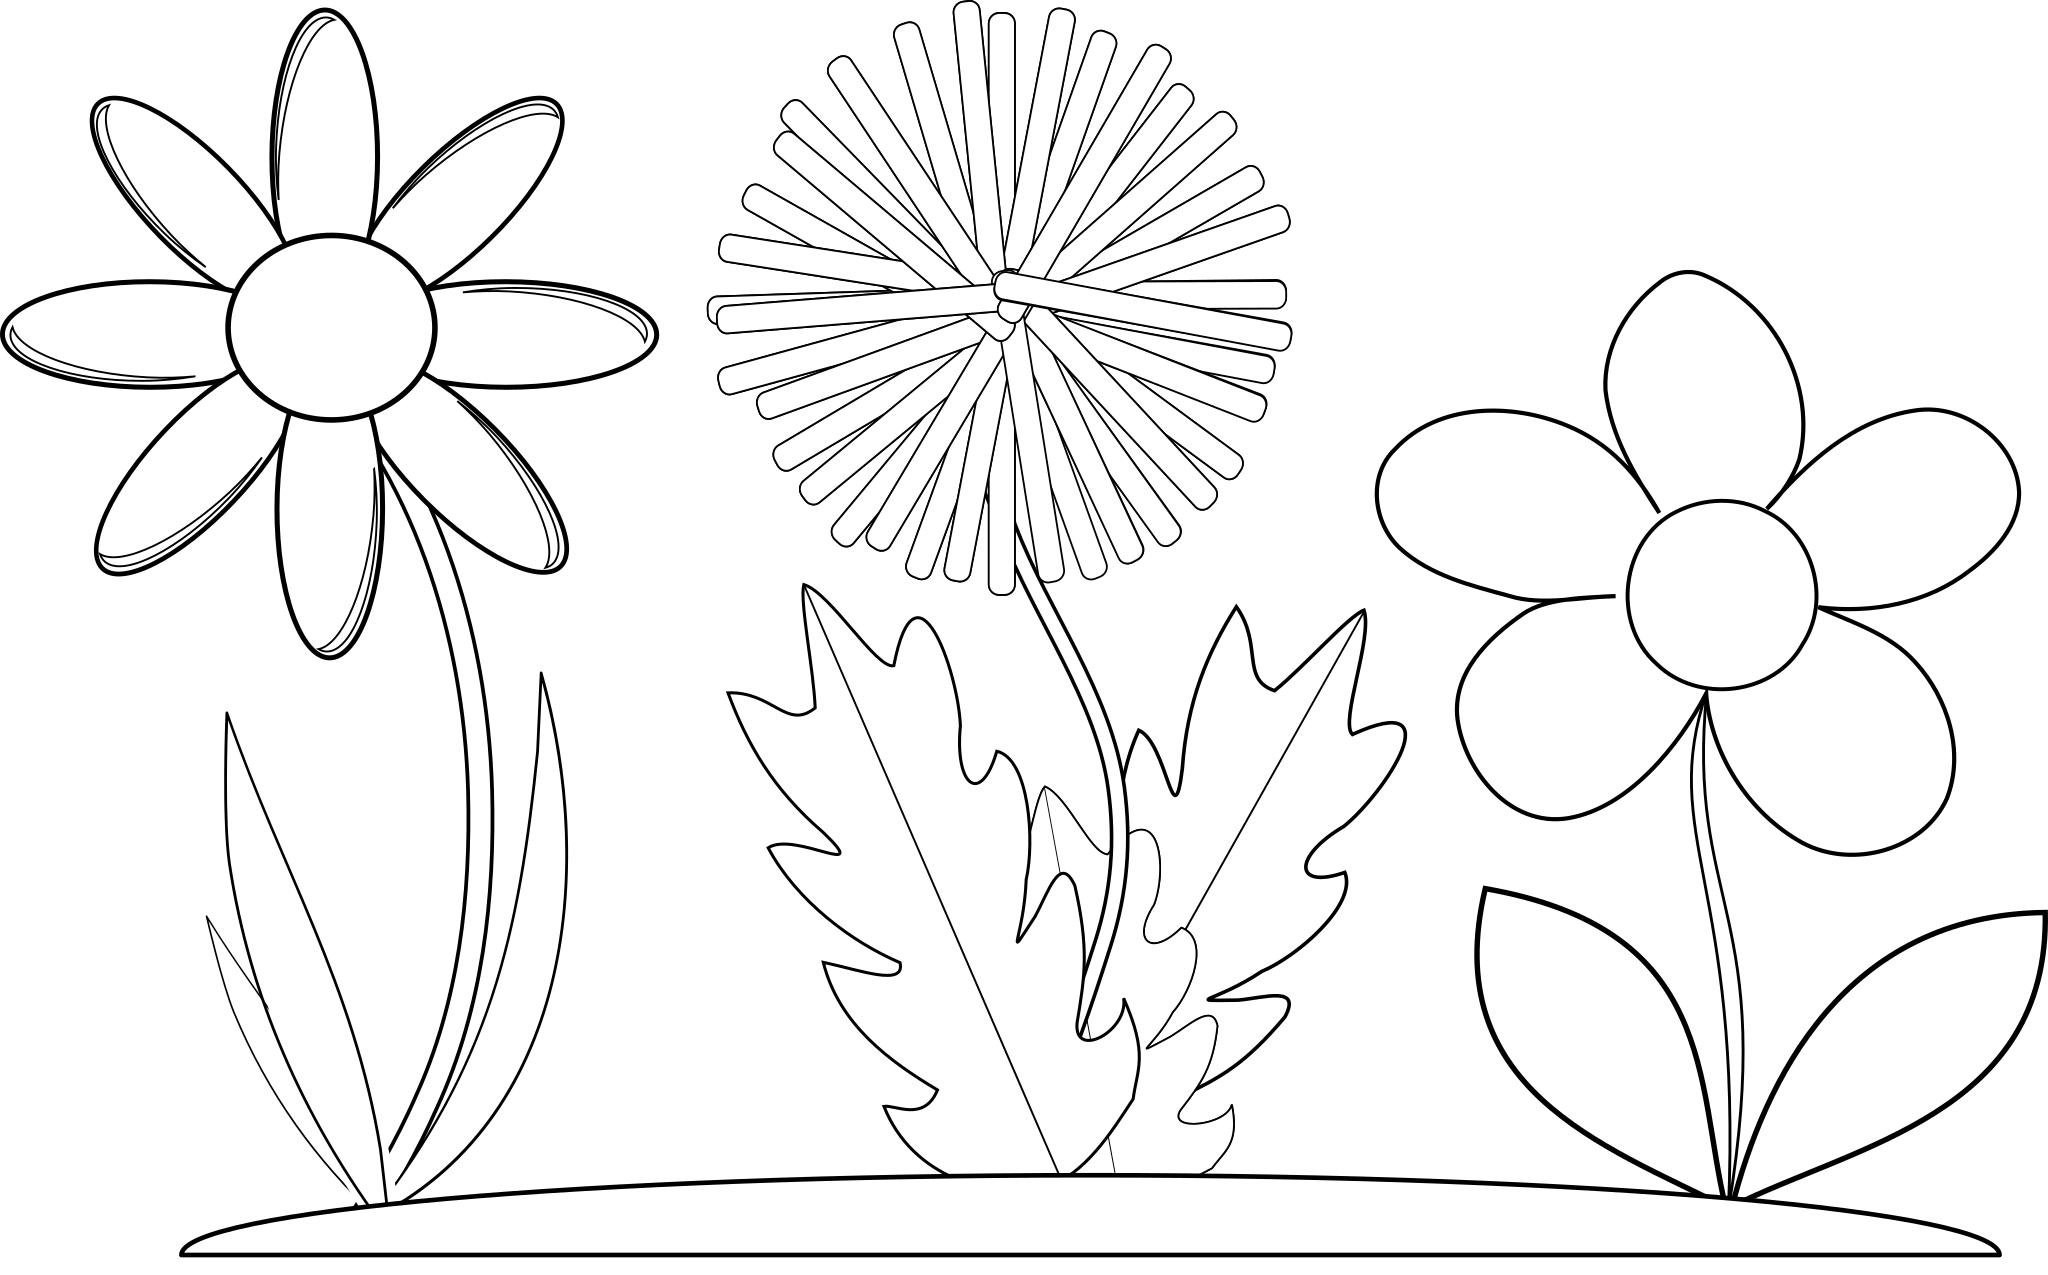 Эскиз для для аппликации цветок